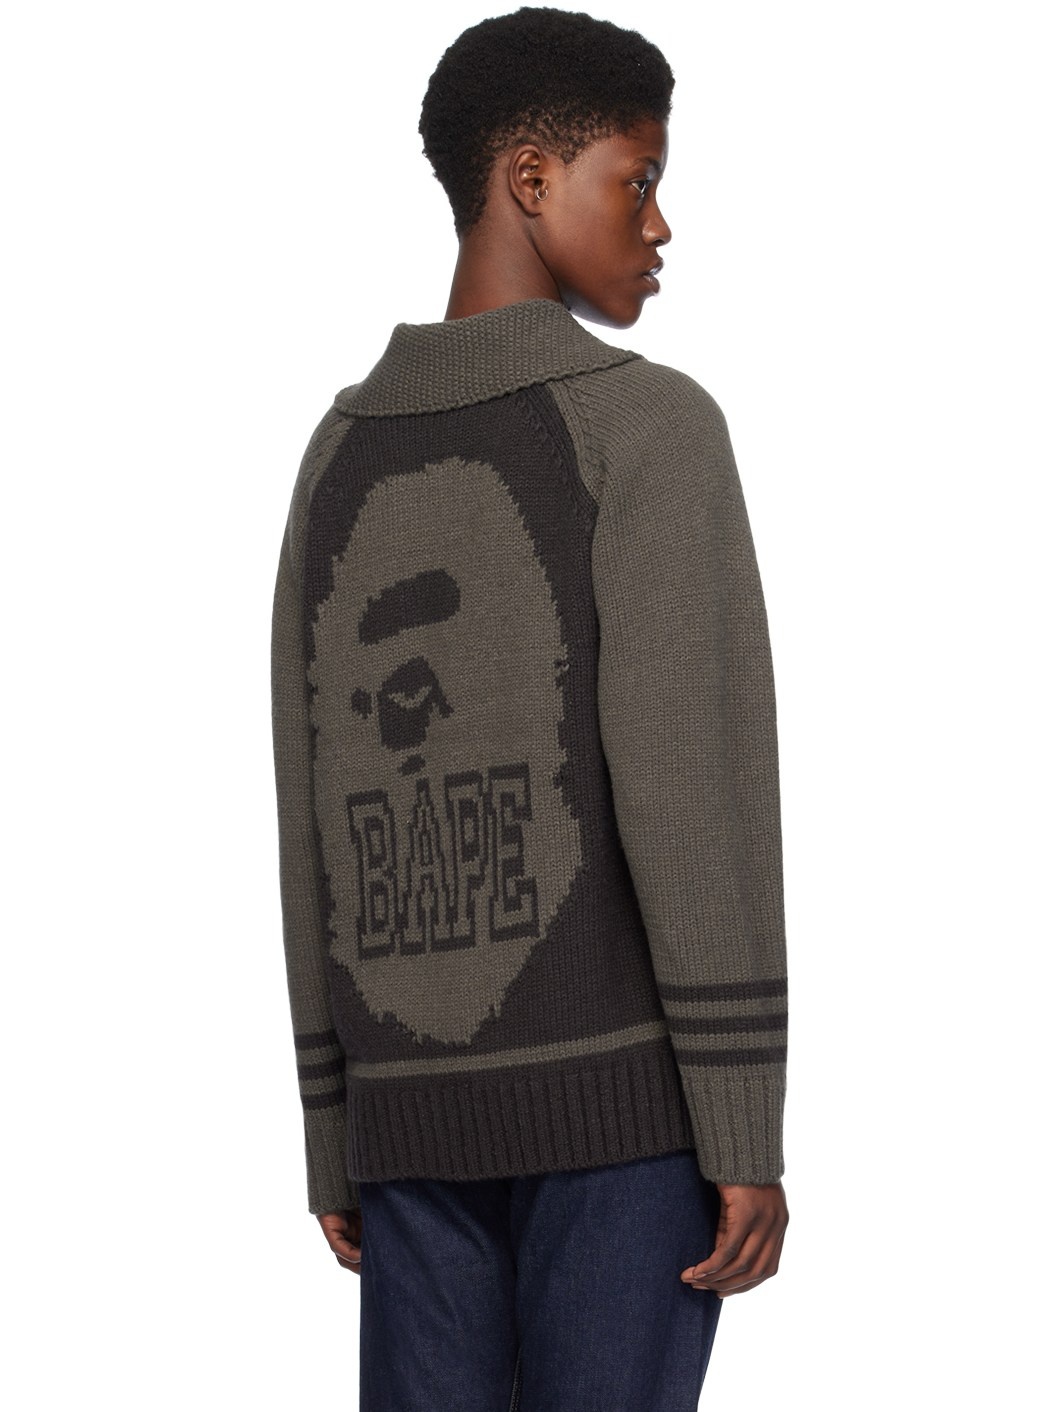 Black Intarsia Sweater - 3